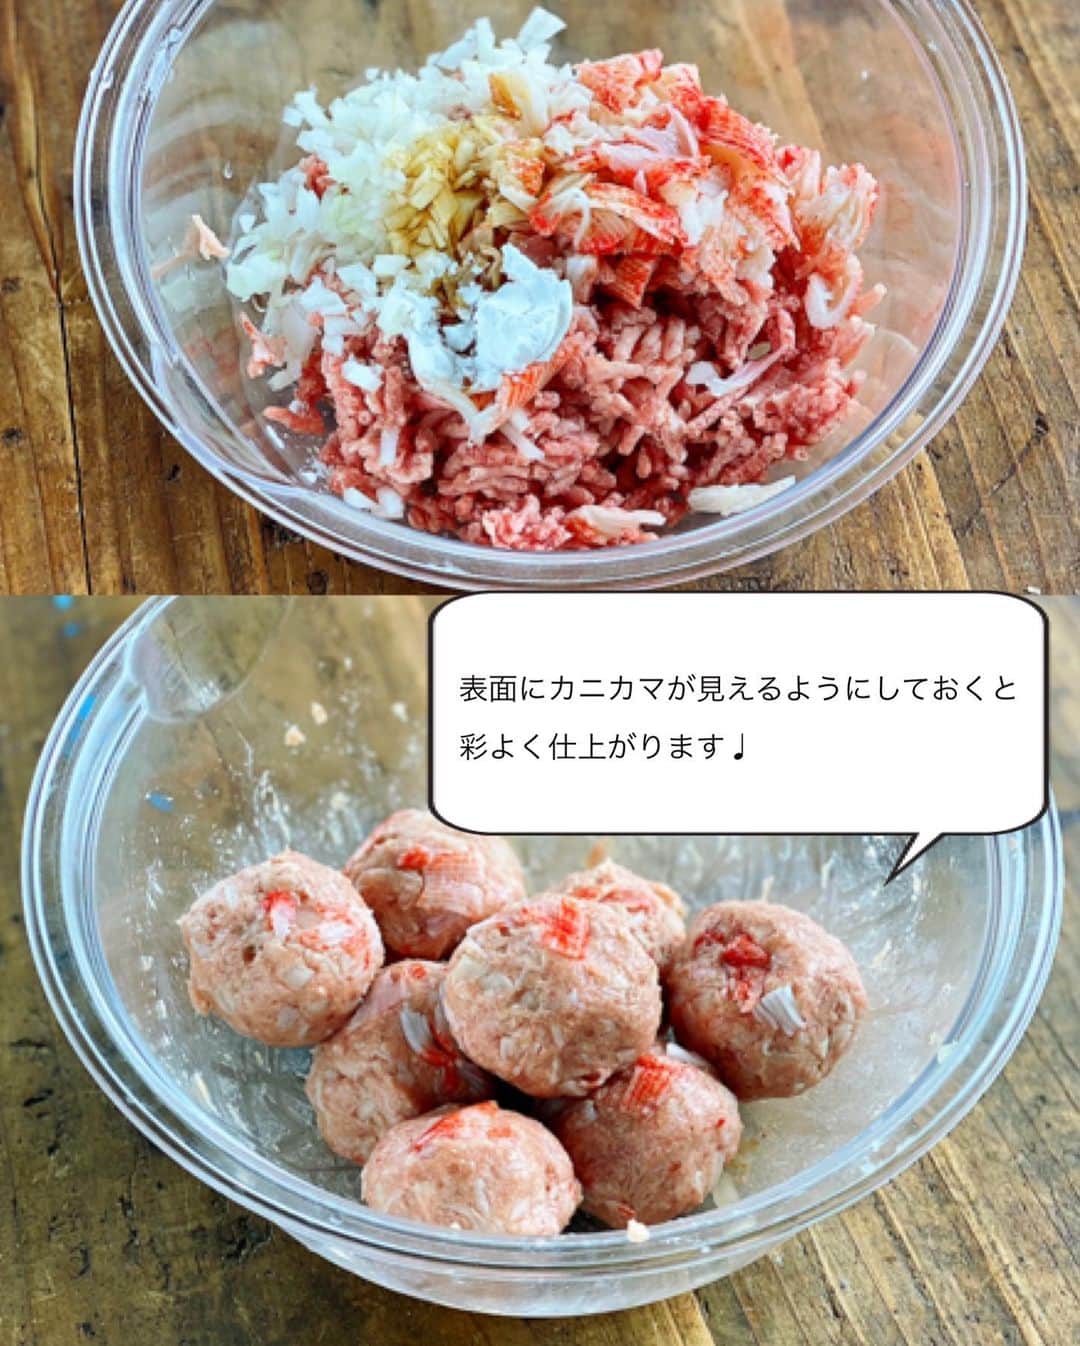 Mizuki【料理ブロガー・簡単レシピ】さんのインスタグラム写真 - (Mizuki【料理ブロガー・簡単レシピ】Instagram)「・﻿ 【レシピ】ーーーーーーーーーーーー﻿ ♡レンジde６分♡かにシュウマイ♡﻿ ーーーーーーーーーーーーーーーーー﻿ ﻿ ﻿ ﻿ おはようございます(*^^*)﻿ ﻿ 今日ご紹介させていただくのは﻿ レンジで作る［かにシュウマイ］﻿ (といってもカニカマですが•••笑)﻿ 一見難しそうに見えますが﻿ これも超簡単に作れますよ〜♩﻿ ﻿ タネは一気に混ぜるだけ！﻿ 皮はのせるだけ！！﻿ レンジで6分チンするだけでもう完成♡﻿ ﻿ 手作りはとっても美味しいので﻿ 是非お試し下さいね♩﻿ これおすすめです(*´艸`)﻿ ﻿ ﻿ ﻿ ーーーーーーーーーーーーーーーーーーーー﻿ 【2人分】﻿ ●豚ひき肉...150g﻿ ●カニカマ...40g﻿ ●玉ねぎ...1/6個﻿ ●酒・醤油・ごま油・片栗粉...各小1﻿ シュウマイの皮...8枚﻿ キャベツ(又は白菜)...1〜2枚﻿ ﻿ 1.玉ねぎはみじん切りにする。カニカマは適当に細かく切る。キャベツは太めの千切りにする。ボウルに●を入れてよく混ぜ、8等分に丸める。﻿ 2.耐熱皿にキャベツを敷き、丸めた餡をのせ、シュウマイの皮を水にくぐらせてのせる。(餡にくっつけるように適当に形を整える※動画参照)﻿ 3.水大1(分量外)を振りかけ、ふんわりラップし、600Wのレンジで6分加熱する。﻿ ーーーーーーーーーーーーーーーーーーーー﻿ ﻿ ﻿ ﻿ 《ポイント》﻿ ♦︎餡の表面にカニカマの赤い部分が見えるようにしておくと、彩よく仕上がります♩﻿ ♦︎皮は餡にくっつくように適当に押さえればOK♩﻿ ♦︎味はしっかりついていますが、お好みで酢醤油や辛子ポン酢などをつけても♩﻿ ﻿ ﻿ ﻿ ﻿ ﻿ ﻿ ﻿ ﻿ 🆕🆕🆕🆕🆕🆕🆕🆕🆕🆕﻿ 【🎥YouTube更新しました🎥】﻿ (＊ハイライトから飛べます♩)﻿ ↓﻿ 🍆レンジで簡単！焼肉のたれで麻婆なす﻿ 🍕世界一簡単なホケミピザ﻿ 🧁ホケミで！クッキー&クリームマフィン﻿ 🍳揉んで焼くだけ！やみつきチキン﻿ 🌭材料4つ！アメリカンドッグ﻿ ﻿ ﻿ ﻿ ﻿ ﻿ 6刷重版しました🔻﻿ 本当にありがとうございます🙇‍♀️﻿ ＿＿＿＿＿＿＿＿＿＿＿＿＿＿＿＿＿＿＿﻿ 📕\ \ 新刊発売中 / /📕﻿ 簡単・時短！ 毎日のごはんがラクになる﻿ ✨🦋 【 #Mizukiの今どき和食 】🦋✨﻿ ＿＿＿＿＿＿＿＿＿＿＿＿＿＿＿＿＿＿＿﻿ なるべく少ない材料で﻿ 手間も時間も省きながら﻿ 簡単にできるおいしい和食レシピ♩﻿ 簡単に失敗なくマスターできる一冊で﻿ もっと気軽に、カジュアルに﻿ 和食を楽しんで下さいね(*^^*)﻿ ＿＿＿＿＿＿＿＿＿＿＿＿＿＿＿＿＿＿＿﻿ ﻿ ﻿ ﻿  ＿＿＿＿＿＿＿＿＿＿＿＿＿＿＿＿＿﻿ 🎀6刷重版しました🎀﻿ 混ぜて焼くだけ。はじめてでも失敗しない！﻿ 【#ホットケーキミックスのお菓子 】﻿ ﻿ 一冊まるっとホケミスイーツ♩﻿ 普段のおやつから﻿ 特別な日にも使えるレシピを﻿ この一冊に詰め込みました(*^^*)﻿ ホットケーキミックスを使えば﻿ 簡単に本格的なお菓子が作れますよ♡﻿ ＿＿＿＿＿＿＿＿＿＿＿＿＿＿＿＿＿﻿ ﻿ ⭐️ストーリー、ハイライト、プロフ画面に﻿ 本のURLを貼らせていただいております♩﻿ →(@mizuki_31cafe )﻿ ﻿ ﻿ ﻿ ﻿ #しゅうまい#焼売#レンジ#カニカマ#Mizuki#簡単レシピ#時短レシピ#節約レシピ#料理#レシピ#フーディーテーブル#マカロニメイト#おうちごはん#デリスタグラマー#料理好きな人と繋がりたい#おうちごはんlover lover#recipe#lin_stagrammer#foodporn#yummy#レンジで6分かにシュウマイ」7月12日 8時25分 - mizuki_31cafe